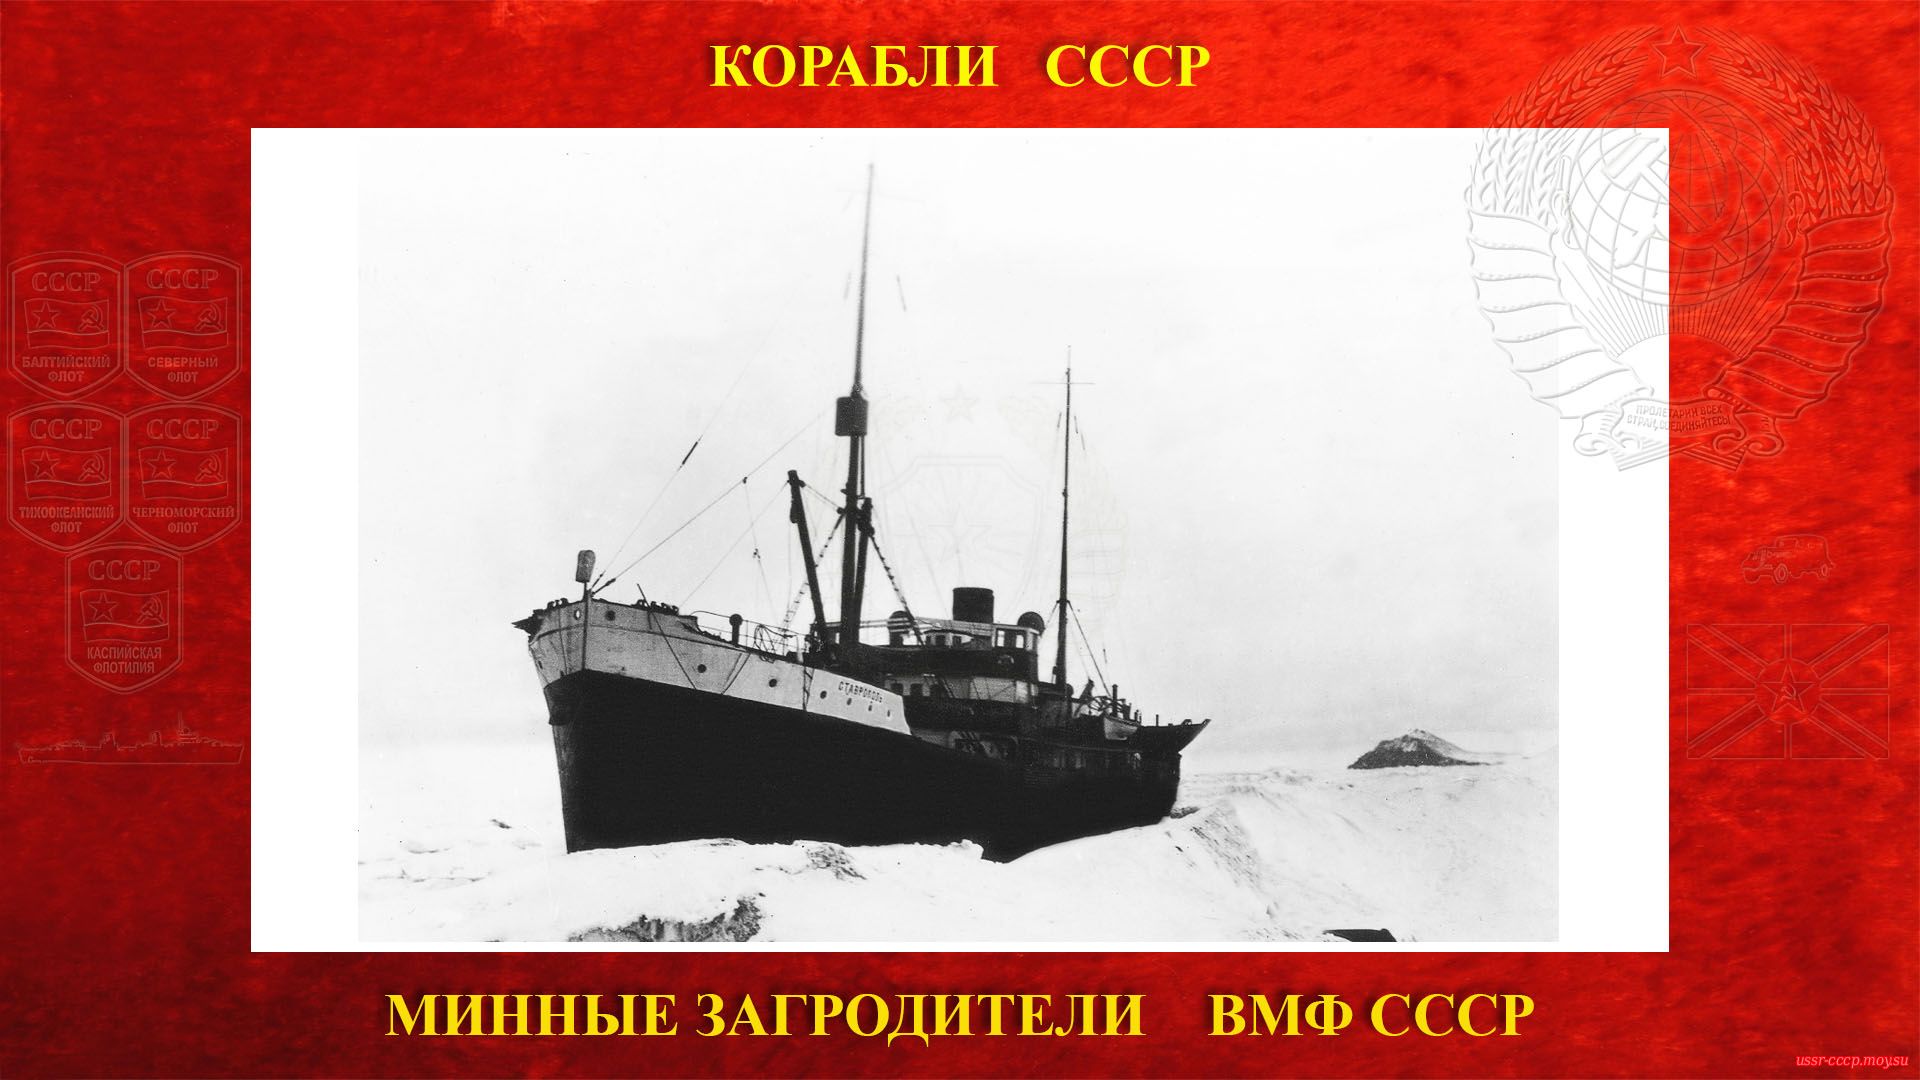 Ворошиловск — Советский минный заградитель ВМФ СССР (повествование)